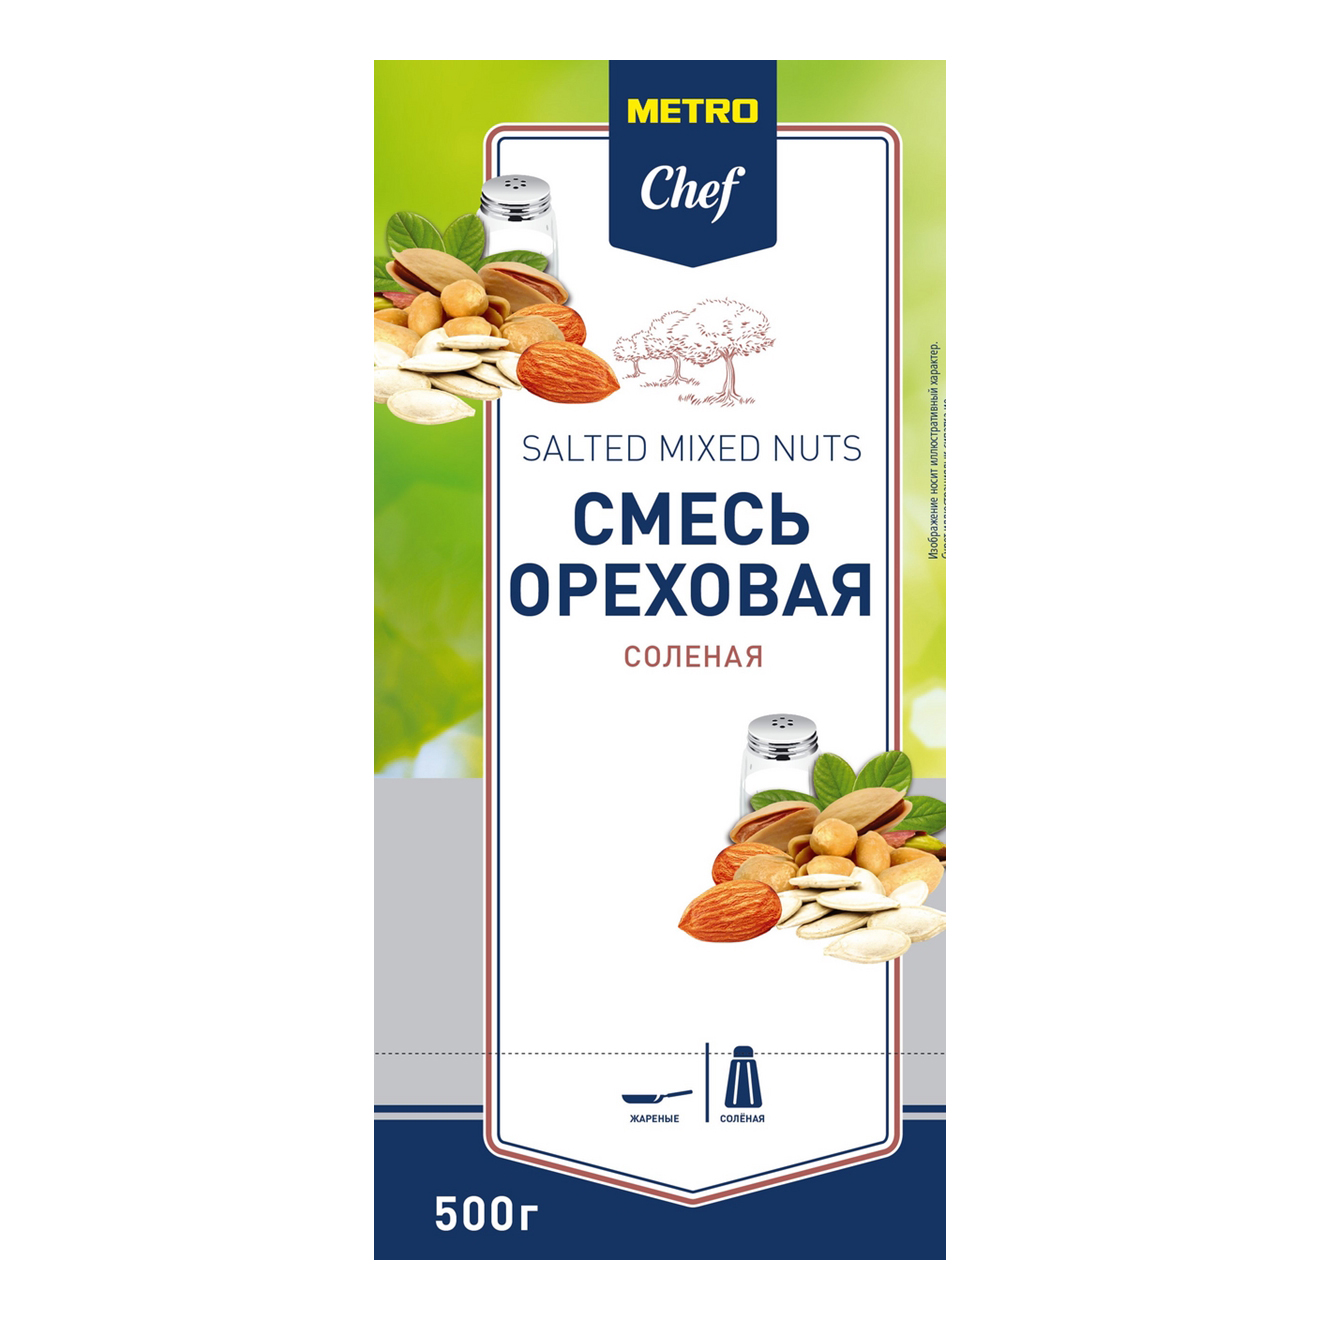 Ореховая смесь Metro Chef фисташка-миндаль-арахис 500 г